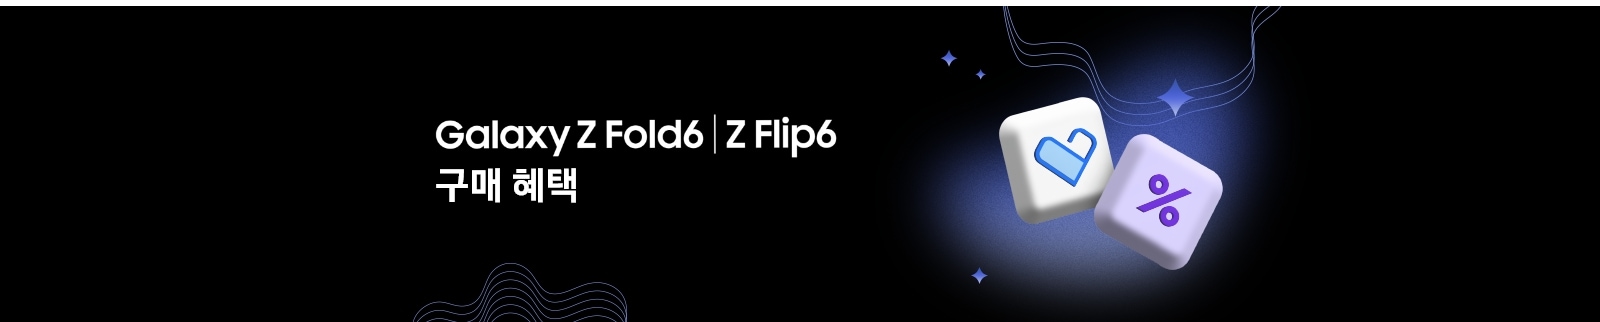 좌측에 'Galaxy Z Fold6 | Z Flip6 구매 혜택' 텍스트가 있고 우측에 삼성 케어 플러스의 블록 모양과 %의 블록 모양이 있고, 주변에 반짝이와 웨이브가 있는 모습